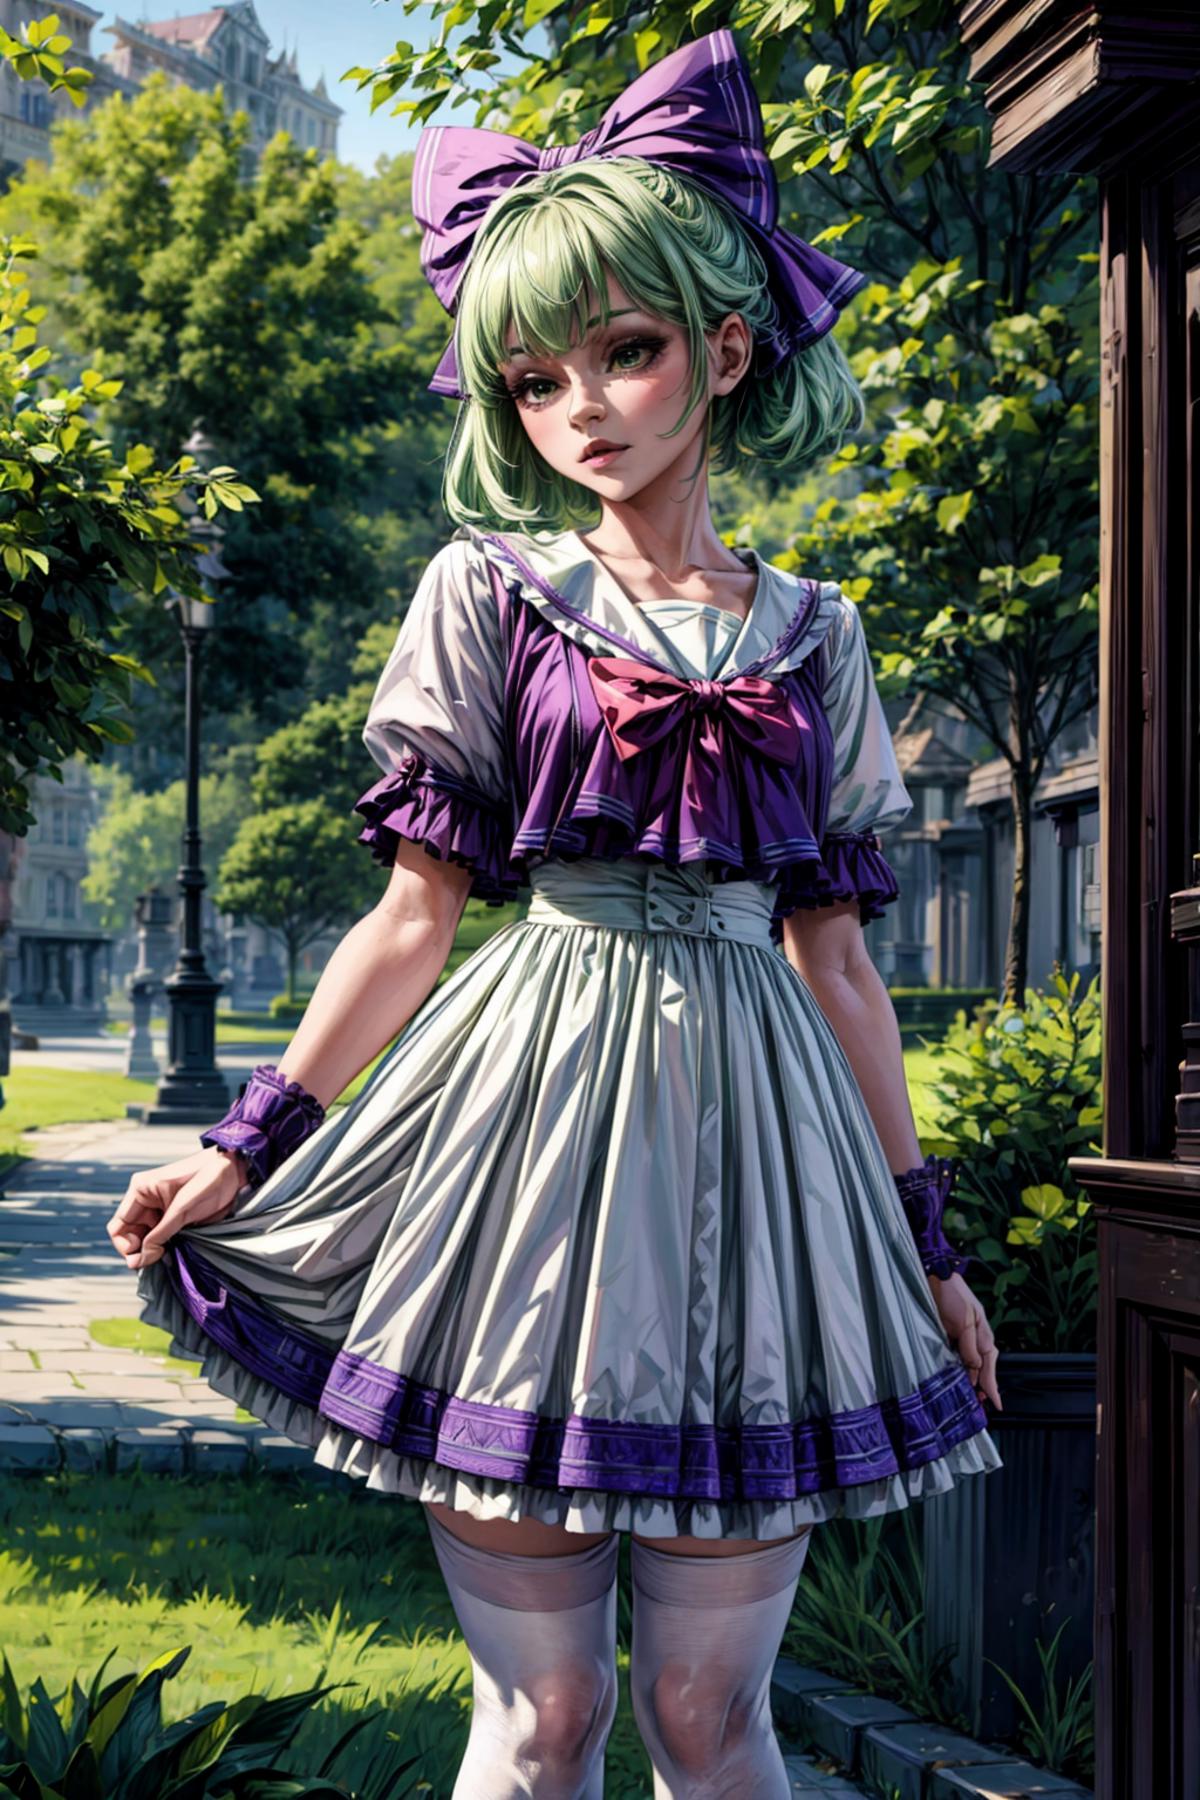 Green Short Hair Purple Bow Girl image by Blackzerker